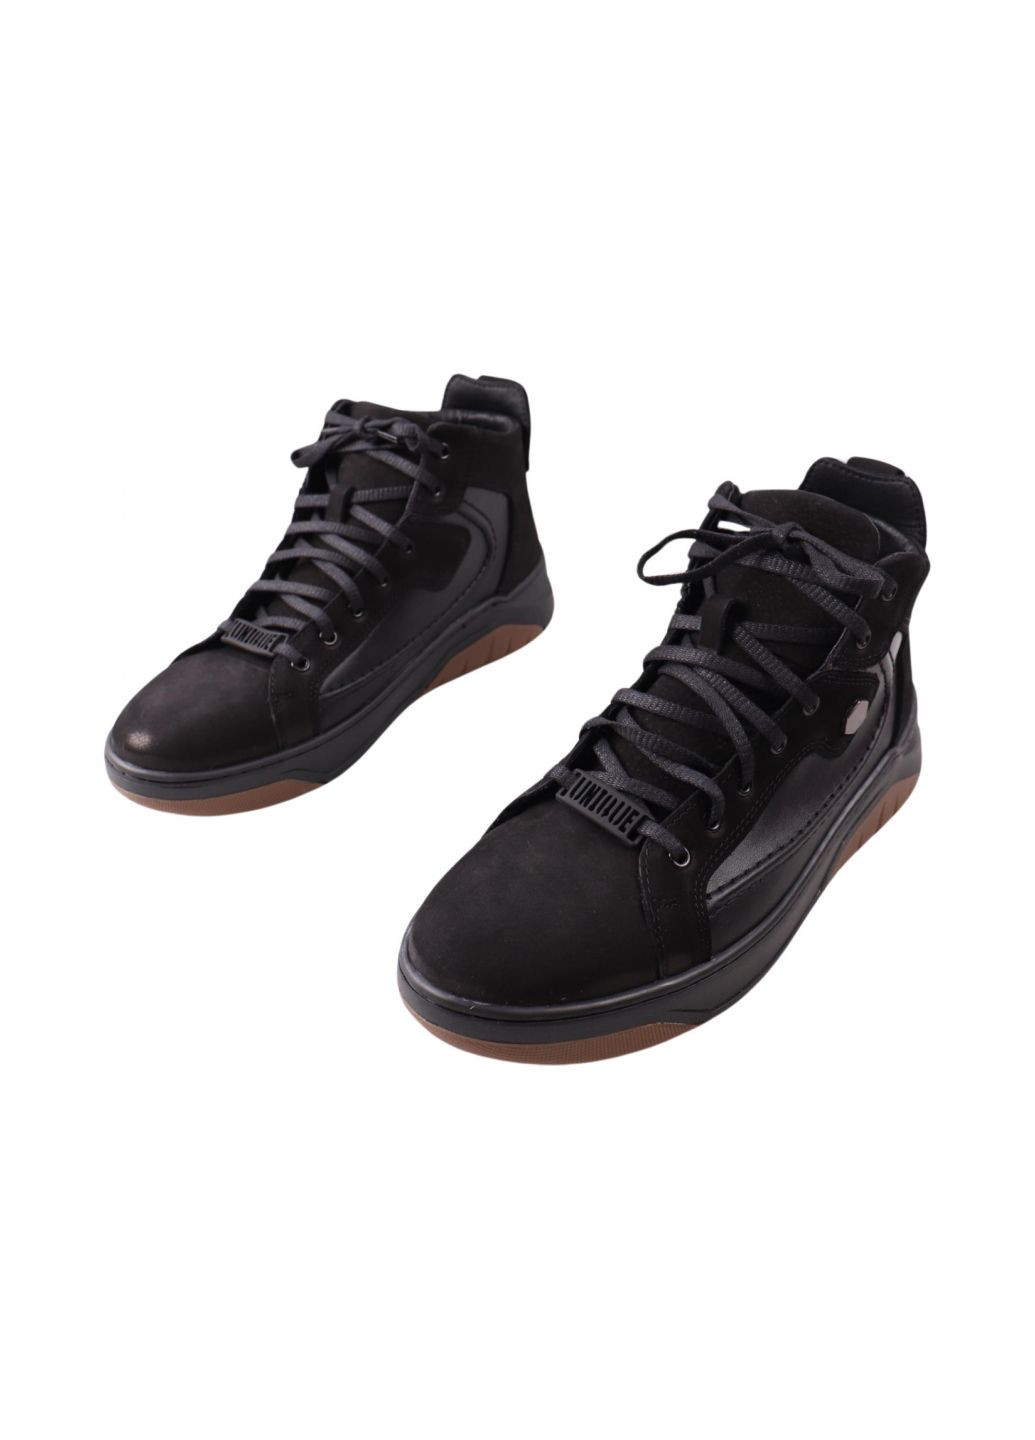 Черные ботинки мужские черные натуральный нубук Vadrus